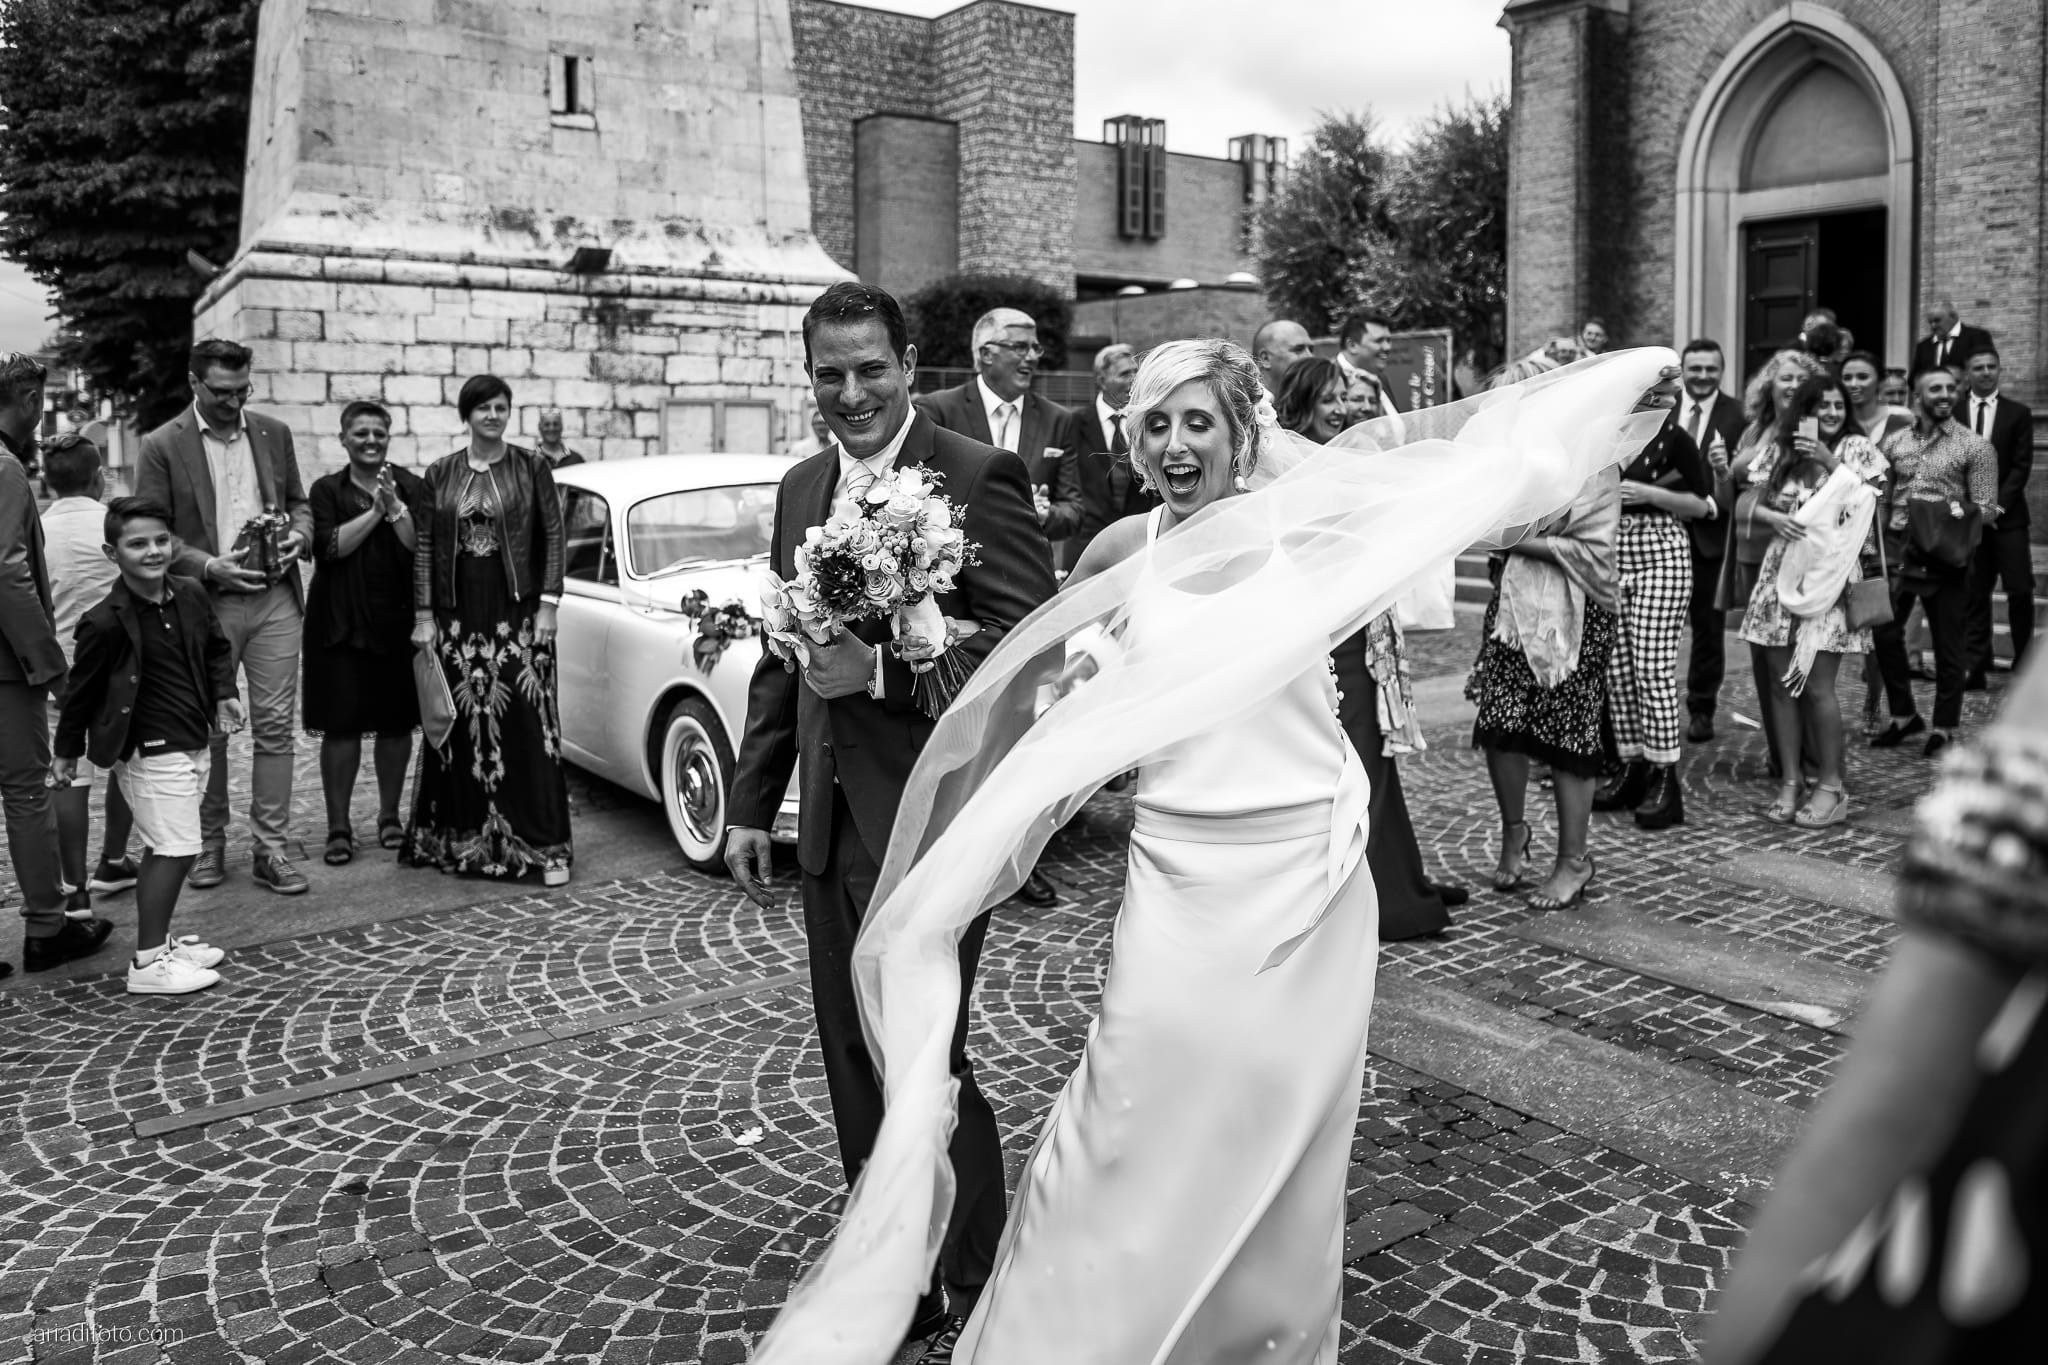 Lauren Michele Matrimonio Destination Wedding Udine cerimonia uscita lancio del riso